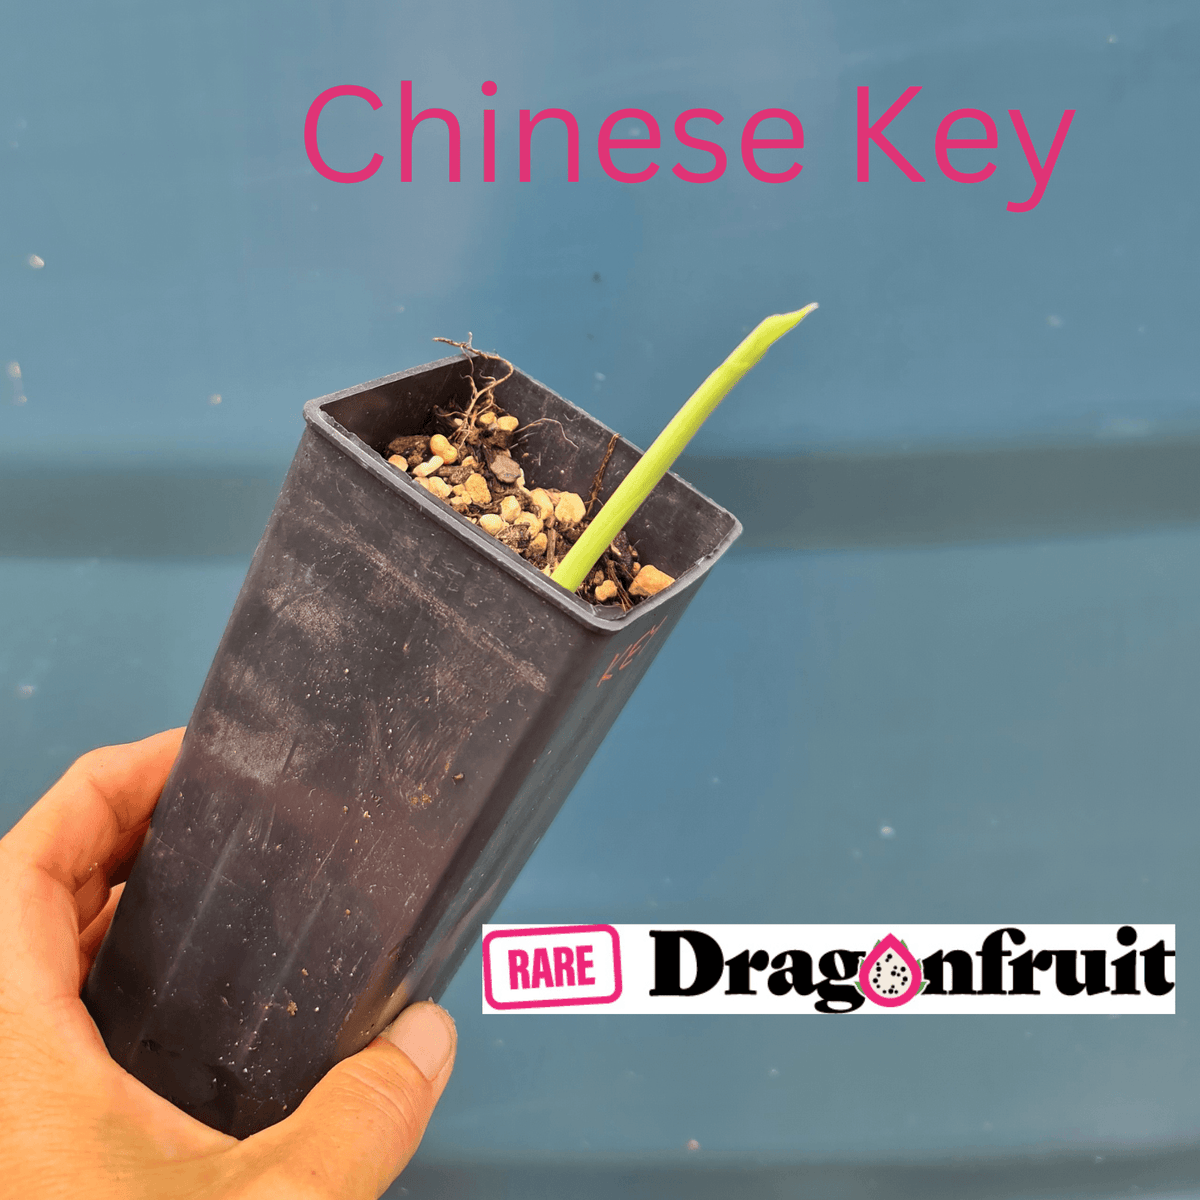 Boesenbergia rotunda- Chinese Keys or Finger ginger - Rare Dragon Fruit